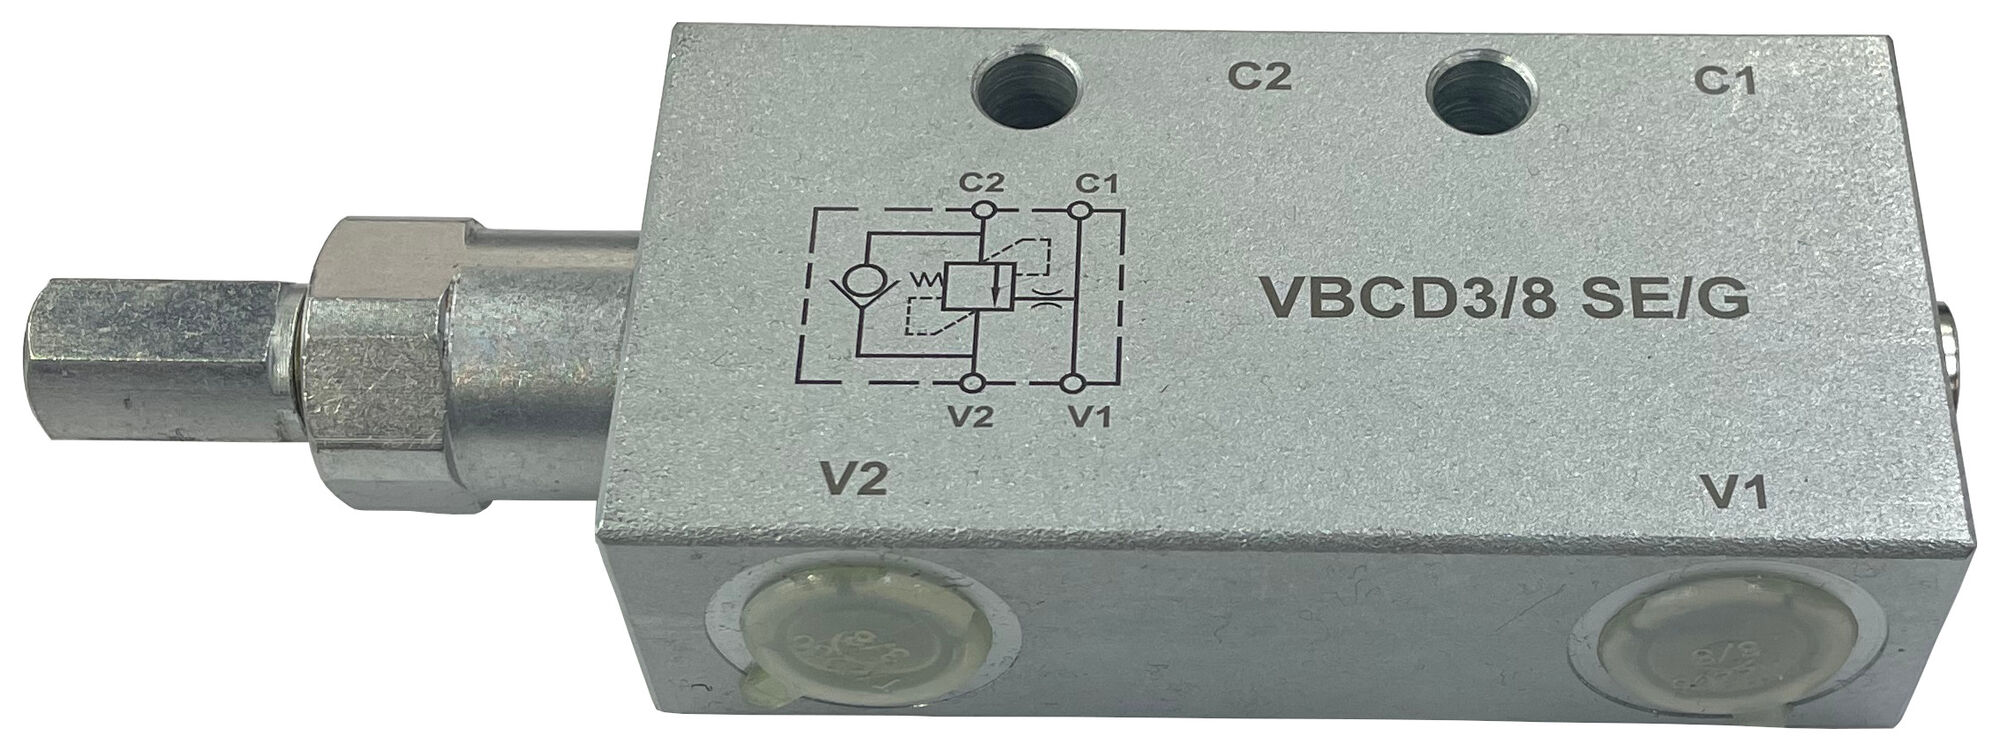 Тормозной клапан односторонний VBCD-G3/8 SE/G